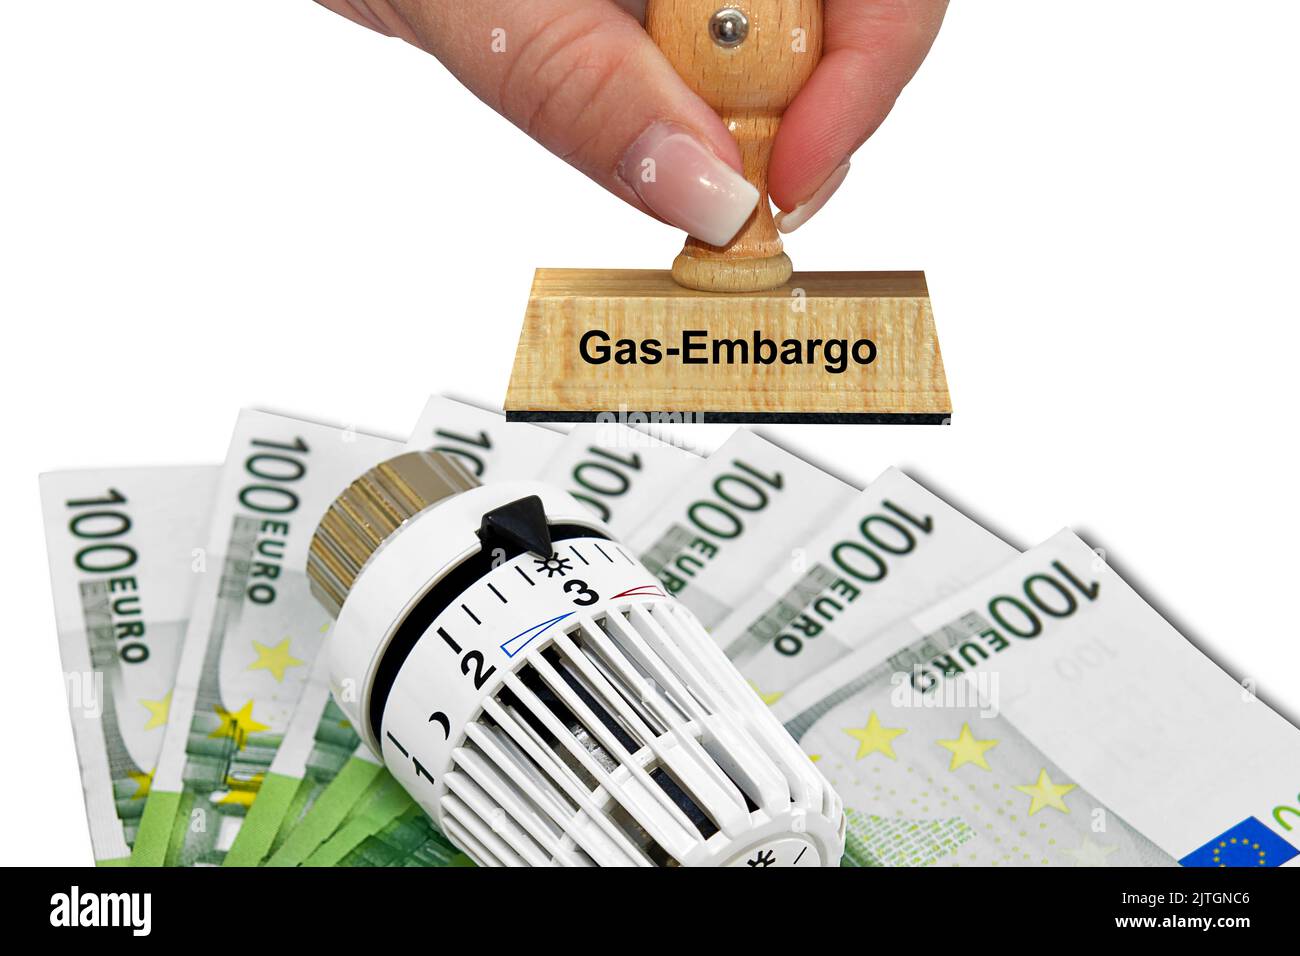 termostato di riscaldamento, banconote e francobollo 'gas embargo', aumento dei costi di riscaldamento Foto Stock